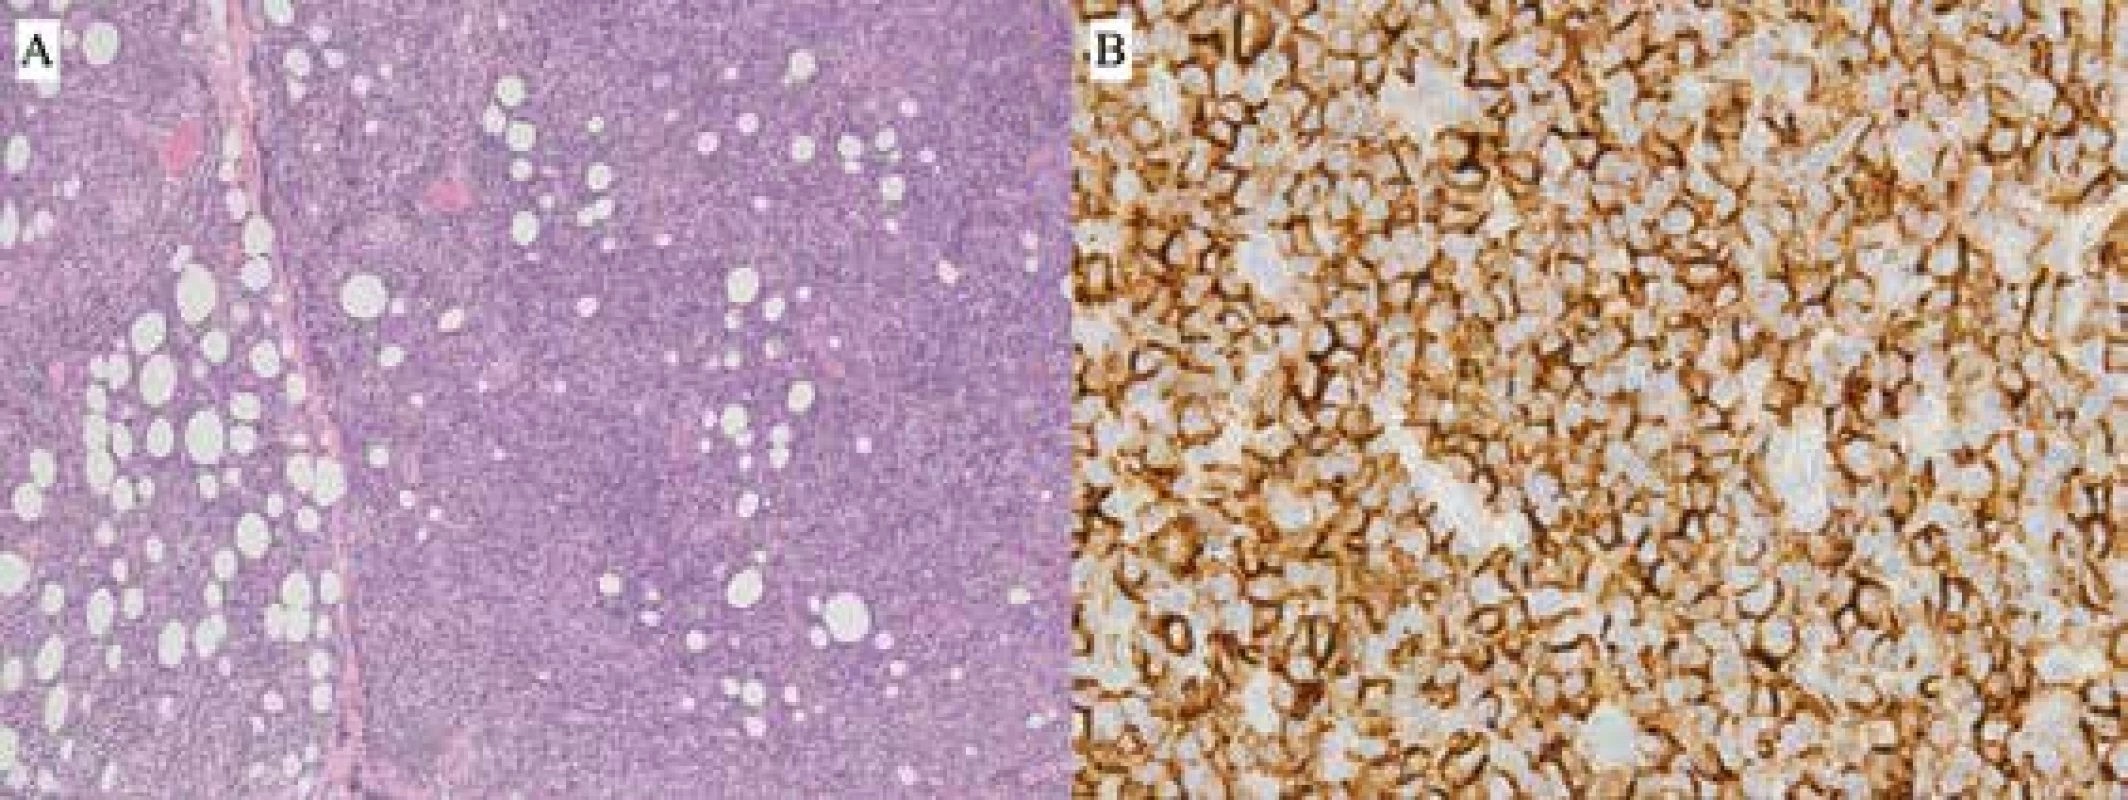 Pacient 2 – B-NHL zo spektra MZBL typu MALT, bioptický nález: <br>A) Infiltrácia fibrolipomatózneho spojiva denznou, difúzne rastúcou nádorovou lymfoproliferáciou z malých až stredne veľkých lymfoidných buniek (HE, zv. 100x) <br>B) Imunohistochemická pozitivita znaku CD20+ v nádorových bunkách (zv. 630x)